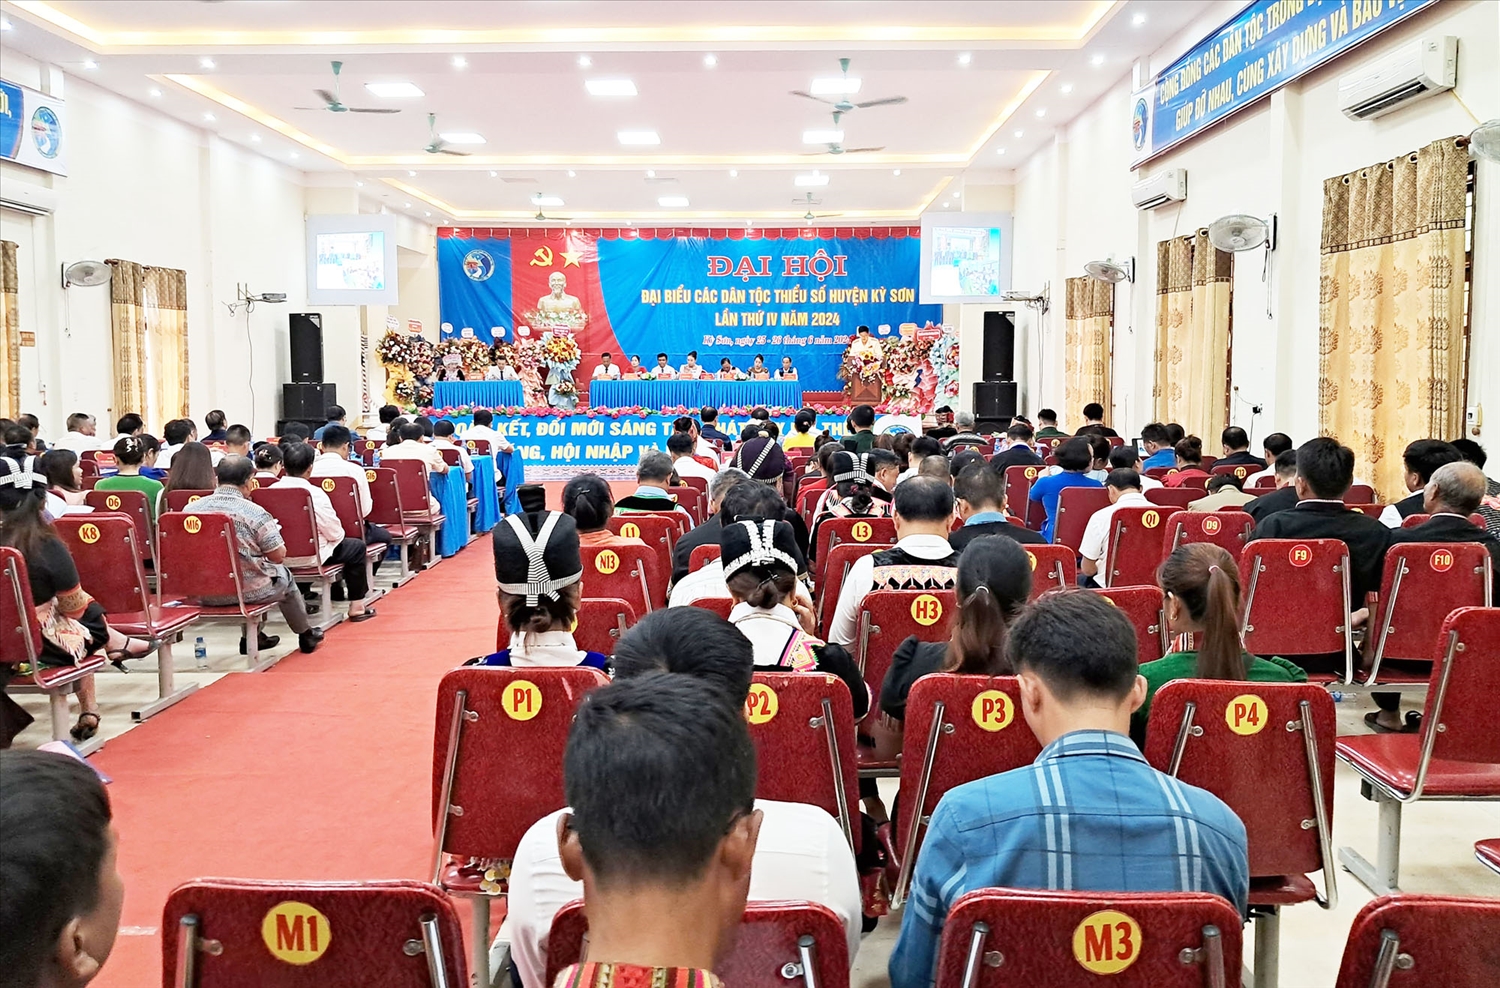 Đại hội đại biểu các DTTS huyện lần thứ IV, năm 2024, là dịp sinh hoạt chính trị lớn của cấp ủy, chính quyền và đồng bào các dân tộc huyện vùng cao Kỳ Sơn